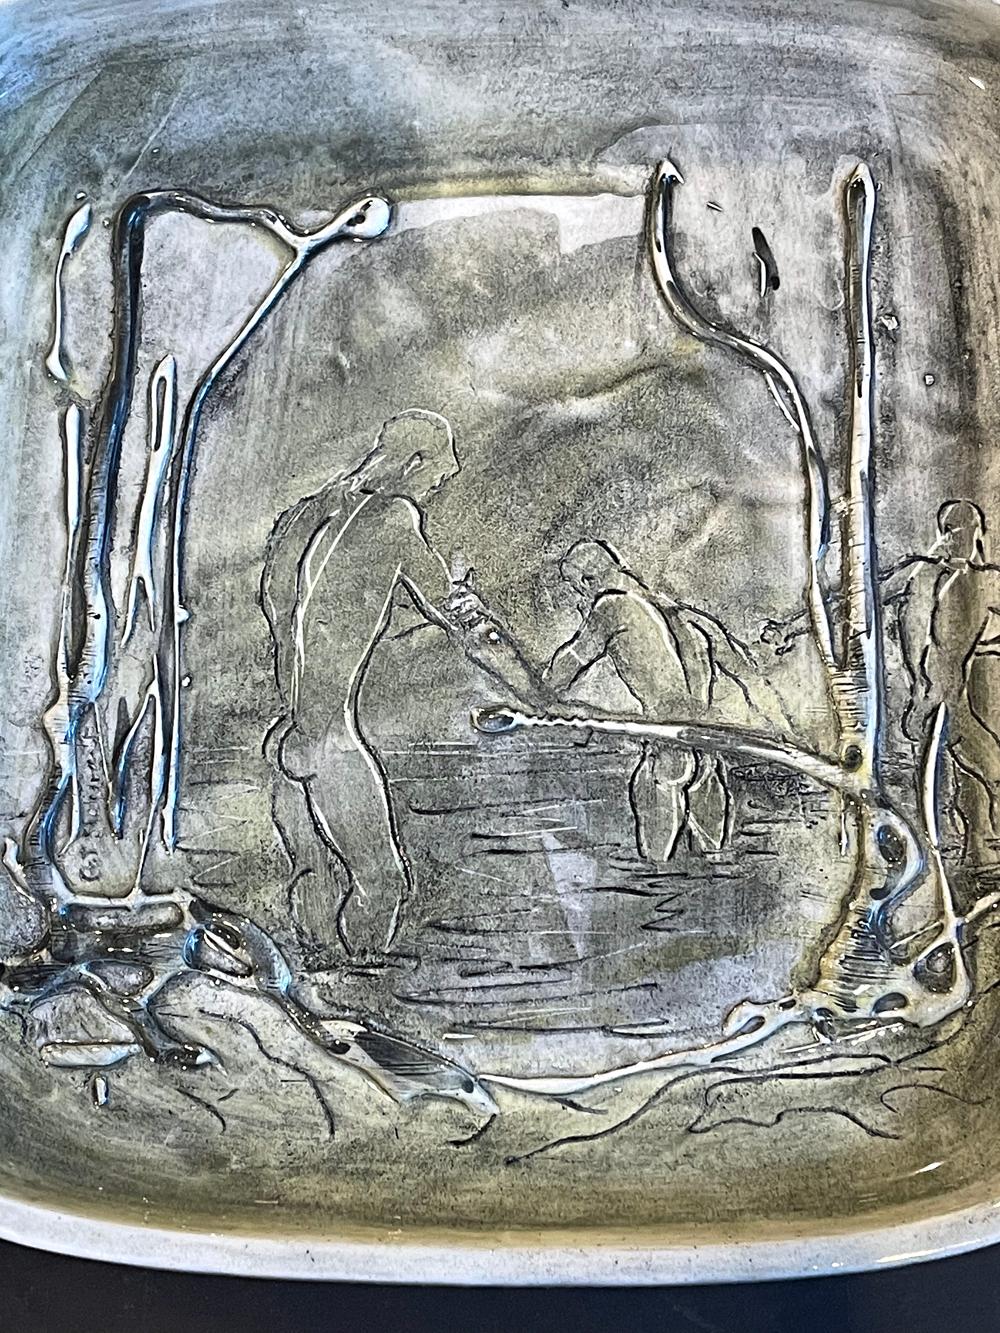 Ein besonders seltenes Beispiel für die Keramikarbeiten von Pat und Covey Stewart in Laguna Beach, Kalifornien, ist diese Schale, die eine Gruppe von drei nackten männlichen Figuren beim Baden in einem Sumpfgebiet an der kalifornischen Küste zeigt.